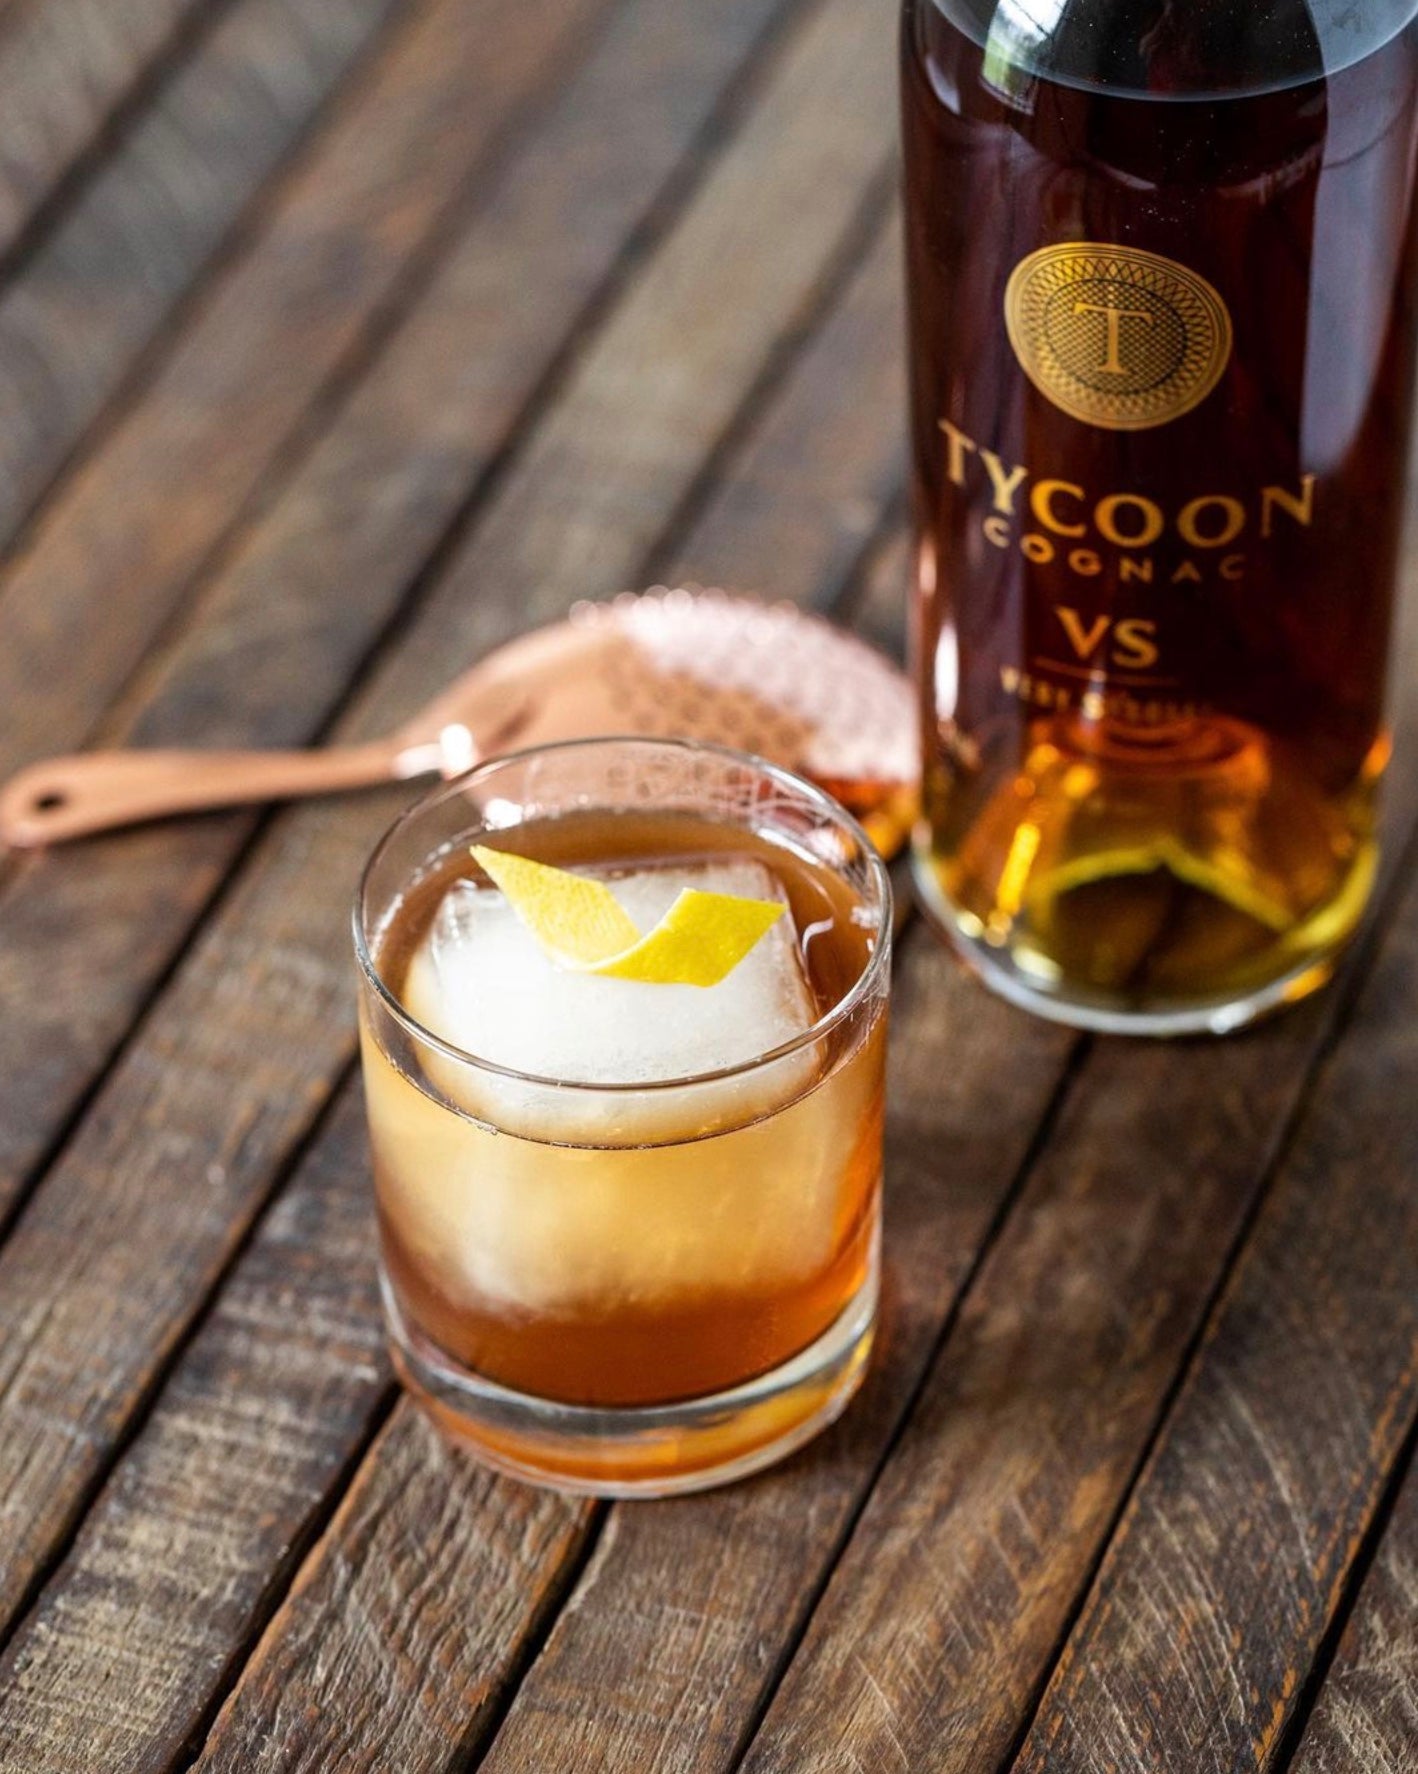 Tycoon VS Cognac by Earl Stevens